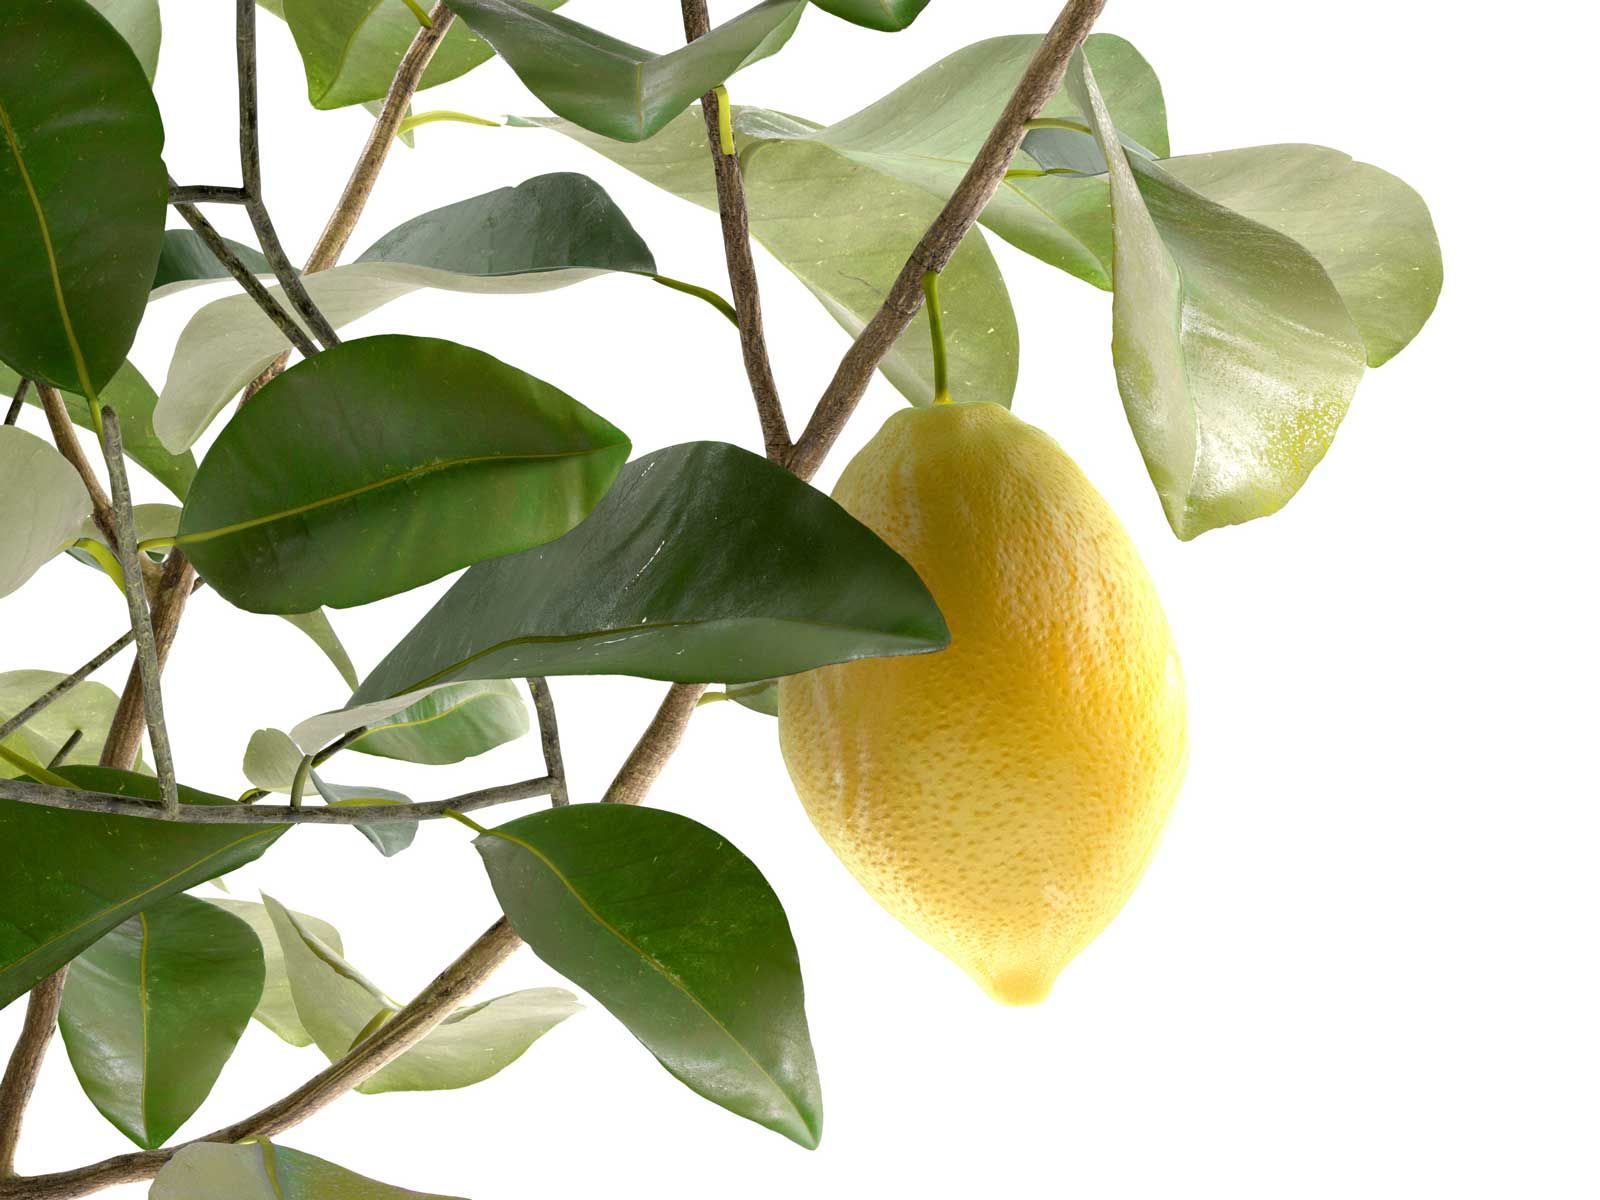 Лимон продолговатой формы